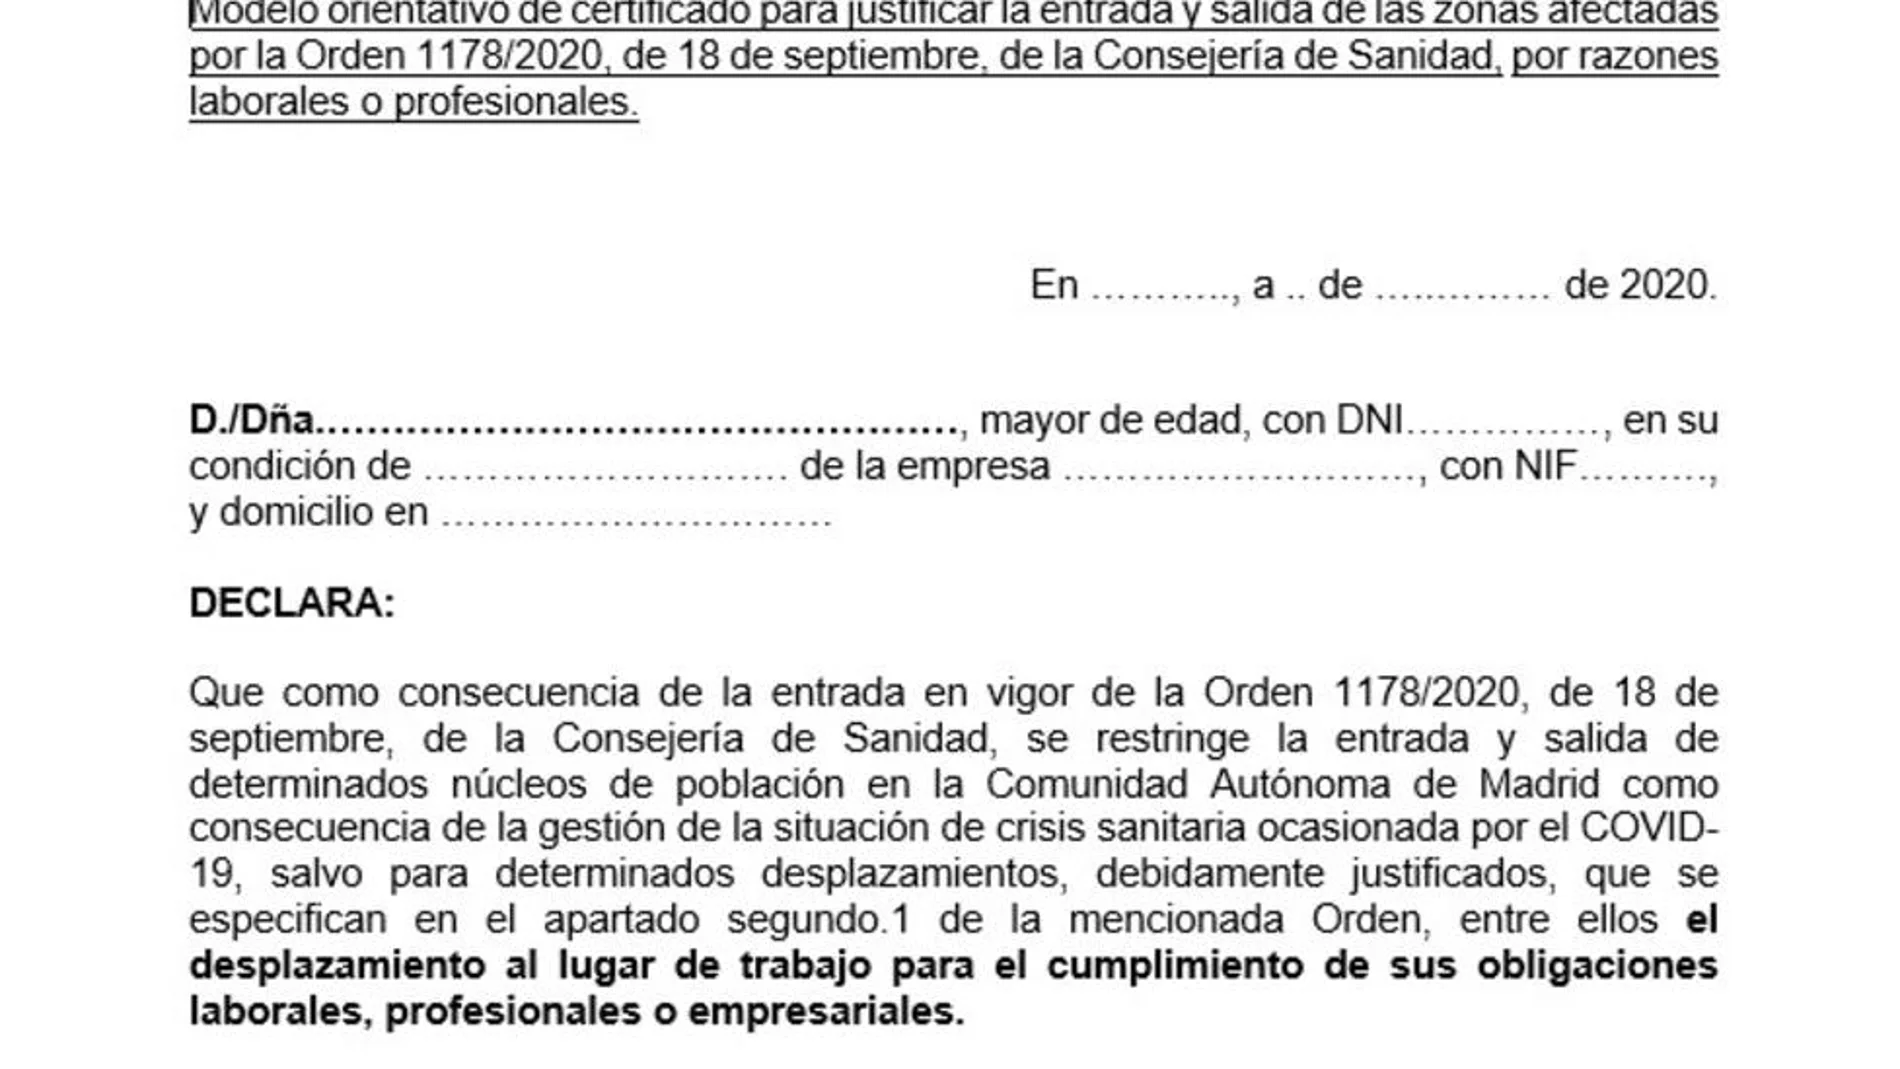 Este es el modelo de justificante para entrar y salir de las zonas con restricciones por el coronavirus en Madrid